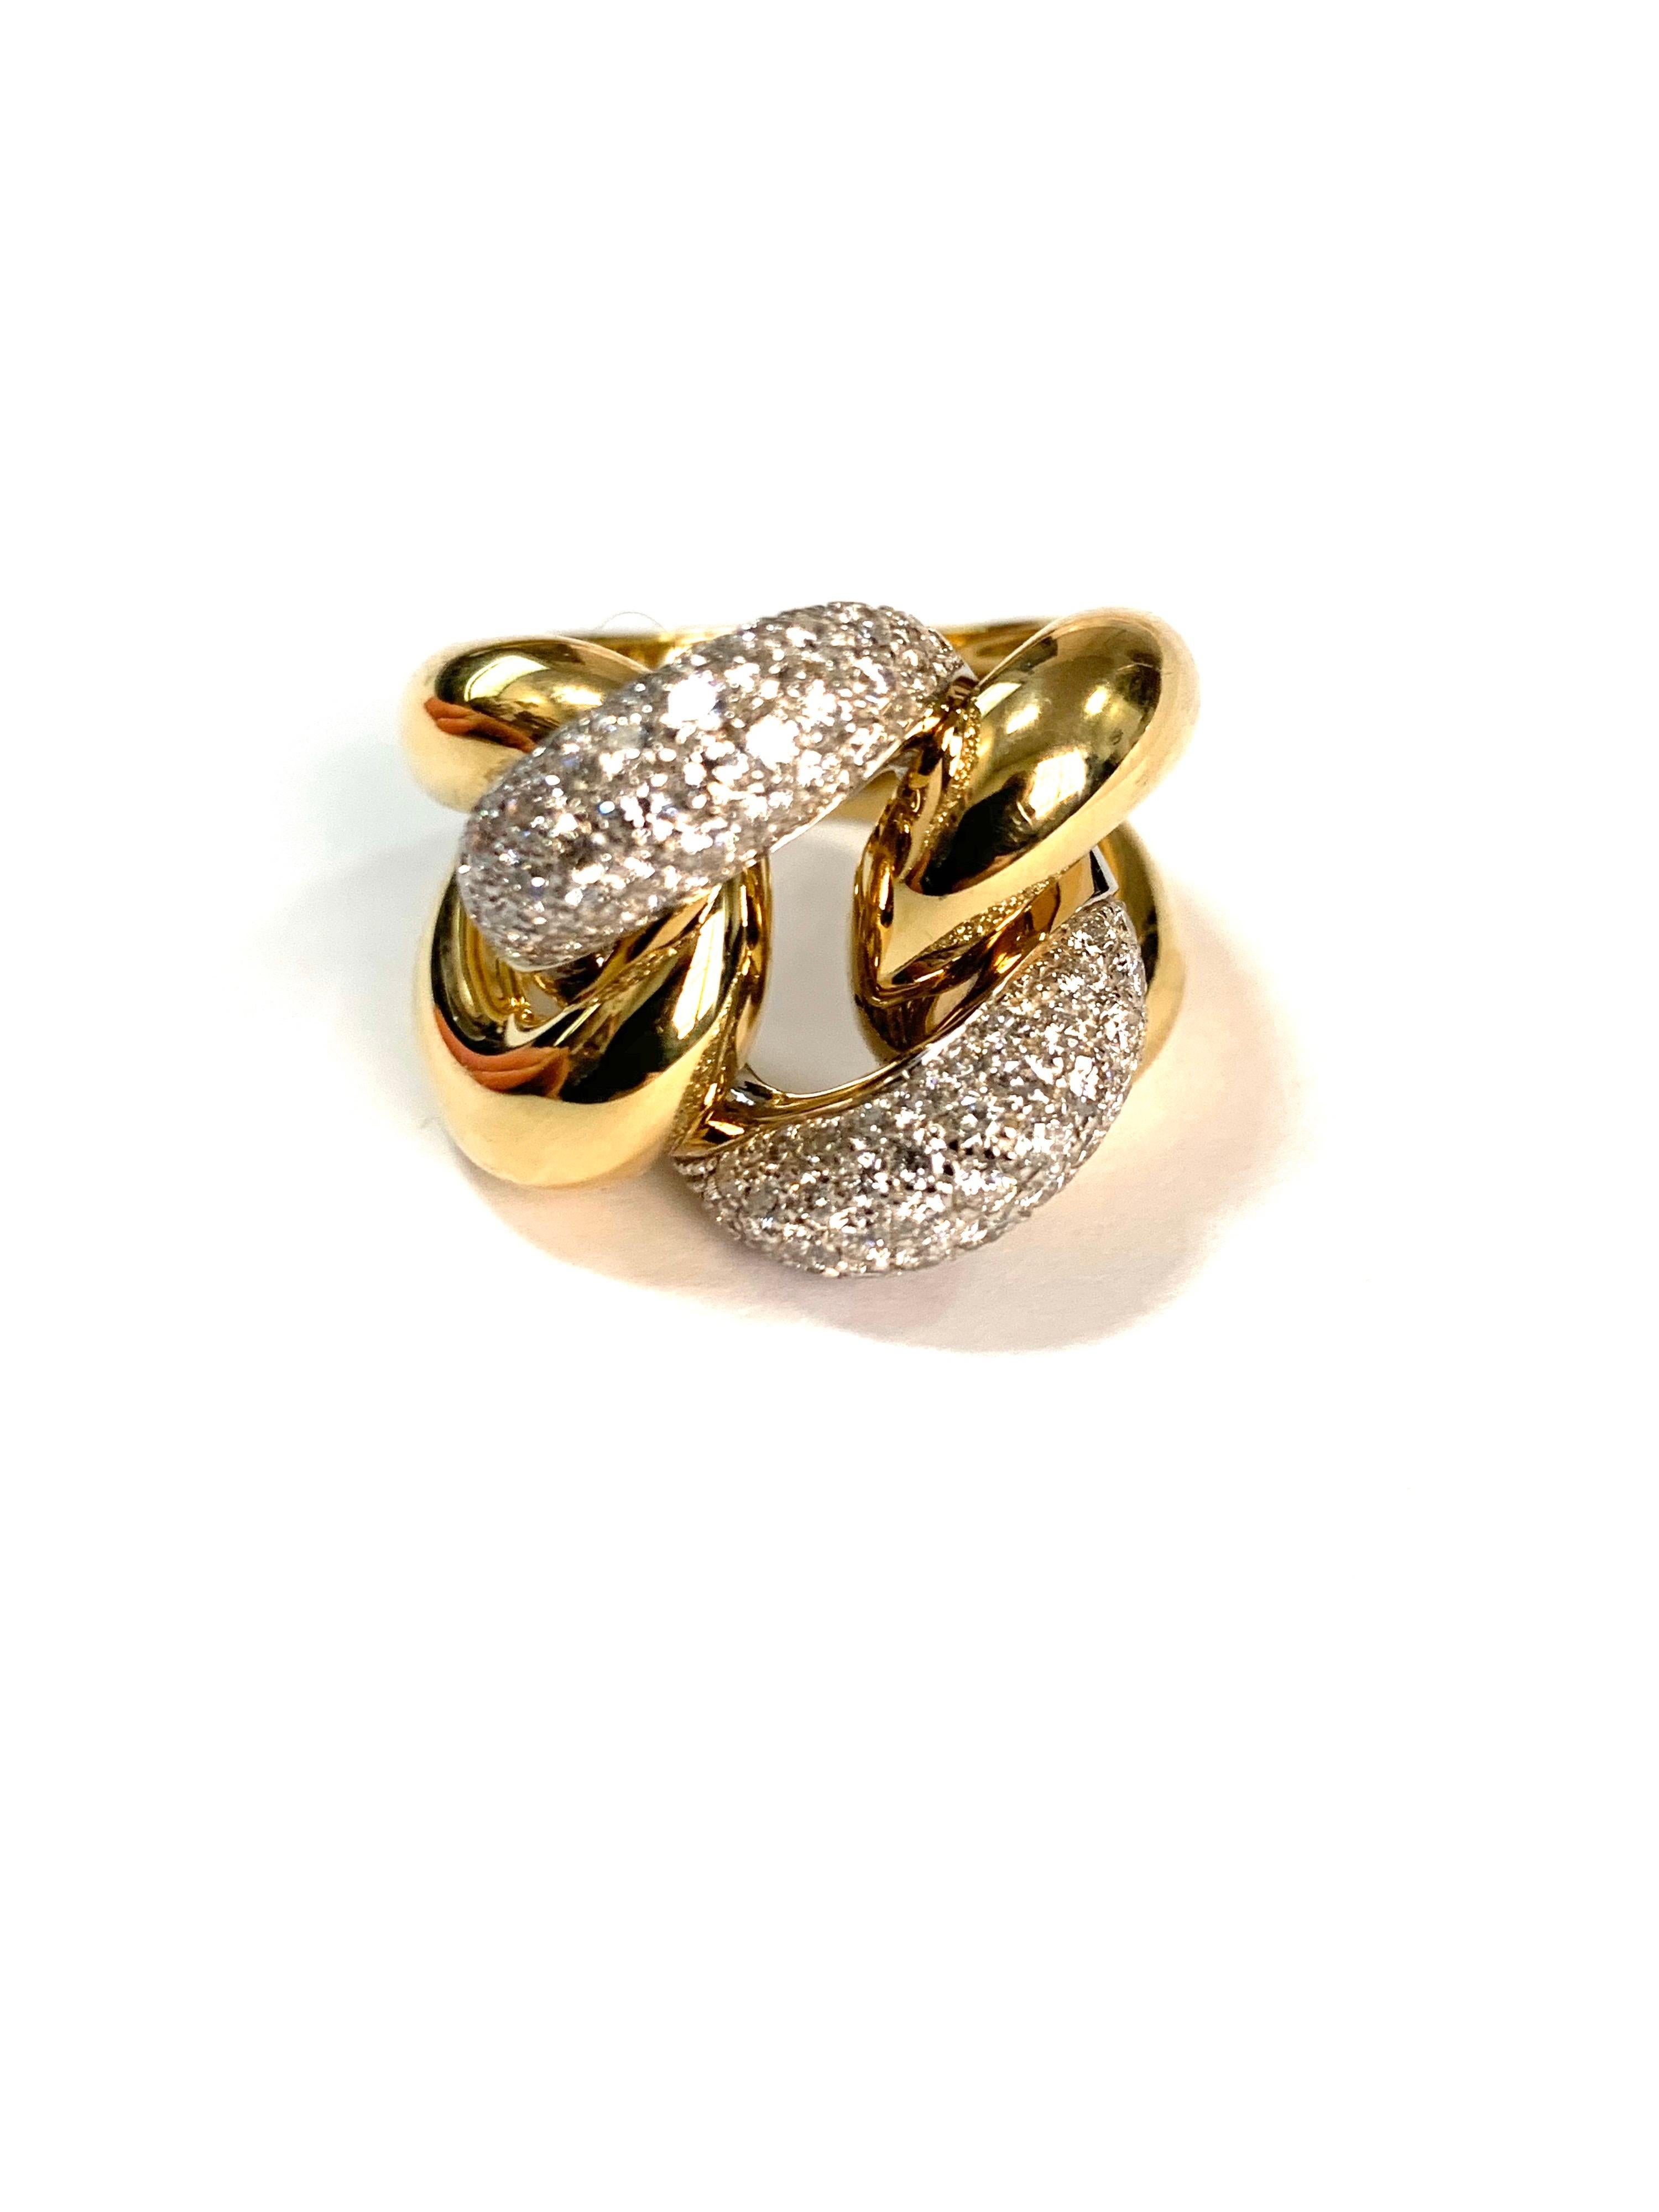 Bague classique groumette en or jaune 18 kt et diamants blancs

Il s'agit de la collection emblématique de Micheletto

le poids total de l'or est de  gr 17.30
le poids total des diamants est de ct 2.15 - couleur GH clarté VVS1
TIMBRE : 10 MI ITALIE